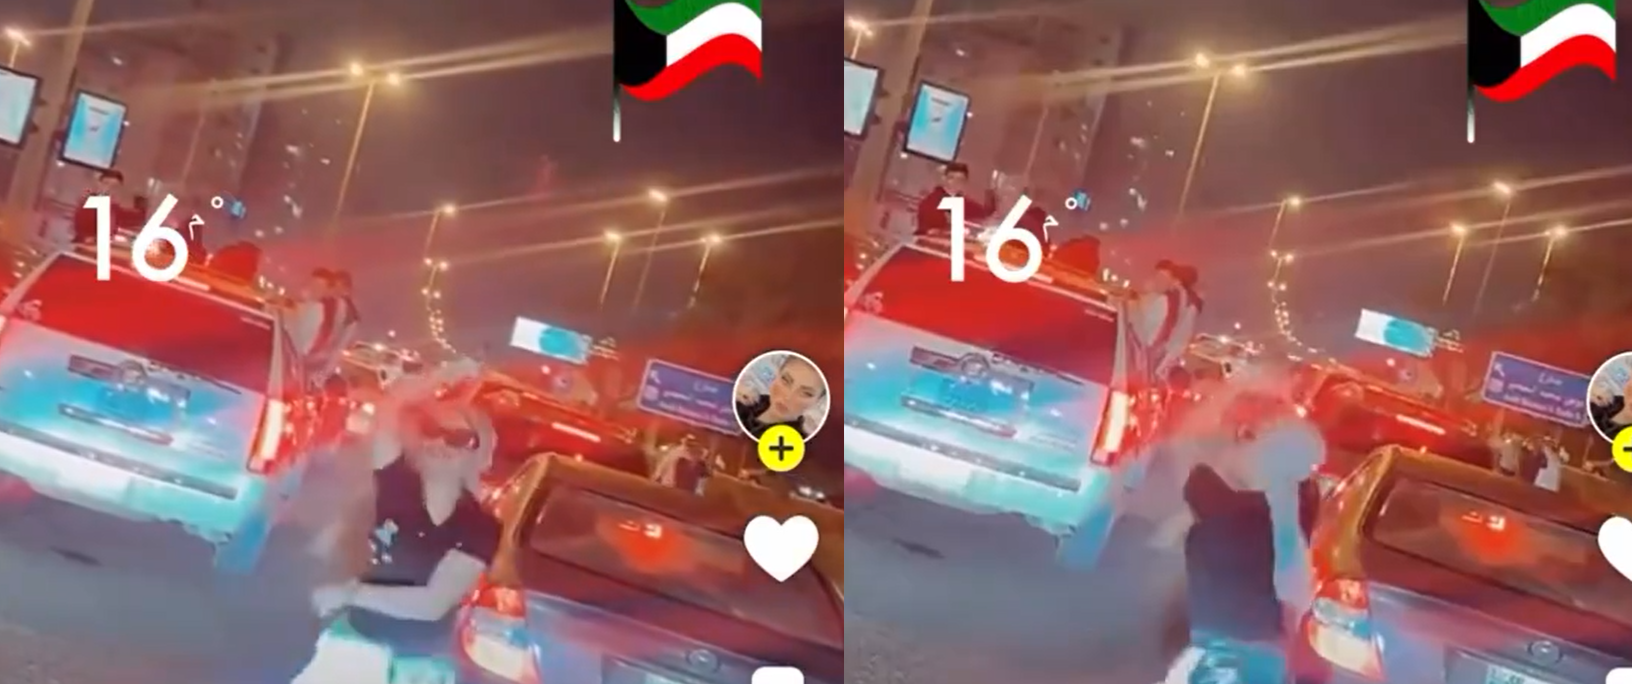 الكويت.. حركات جنسية ورقص فاضح لفتاة في العيد الوطني يفجر الغضب